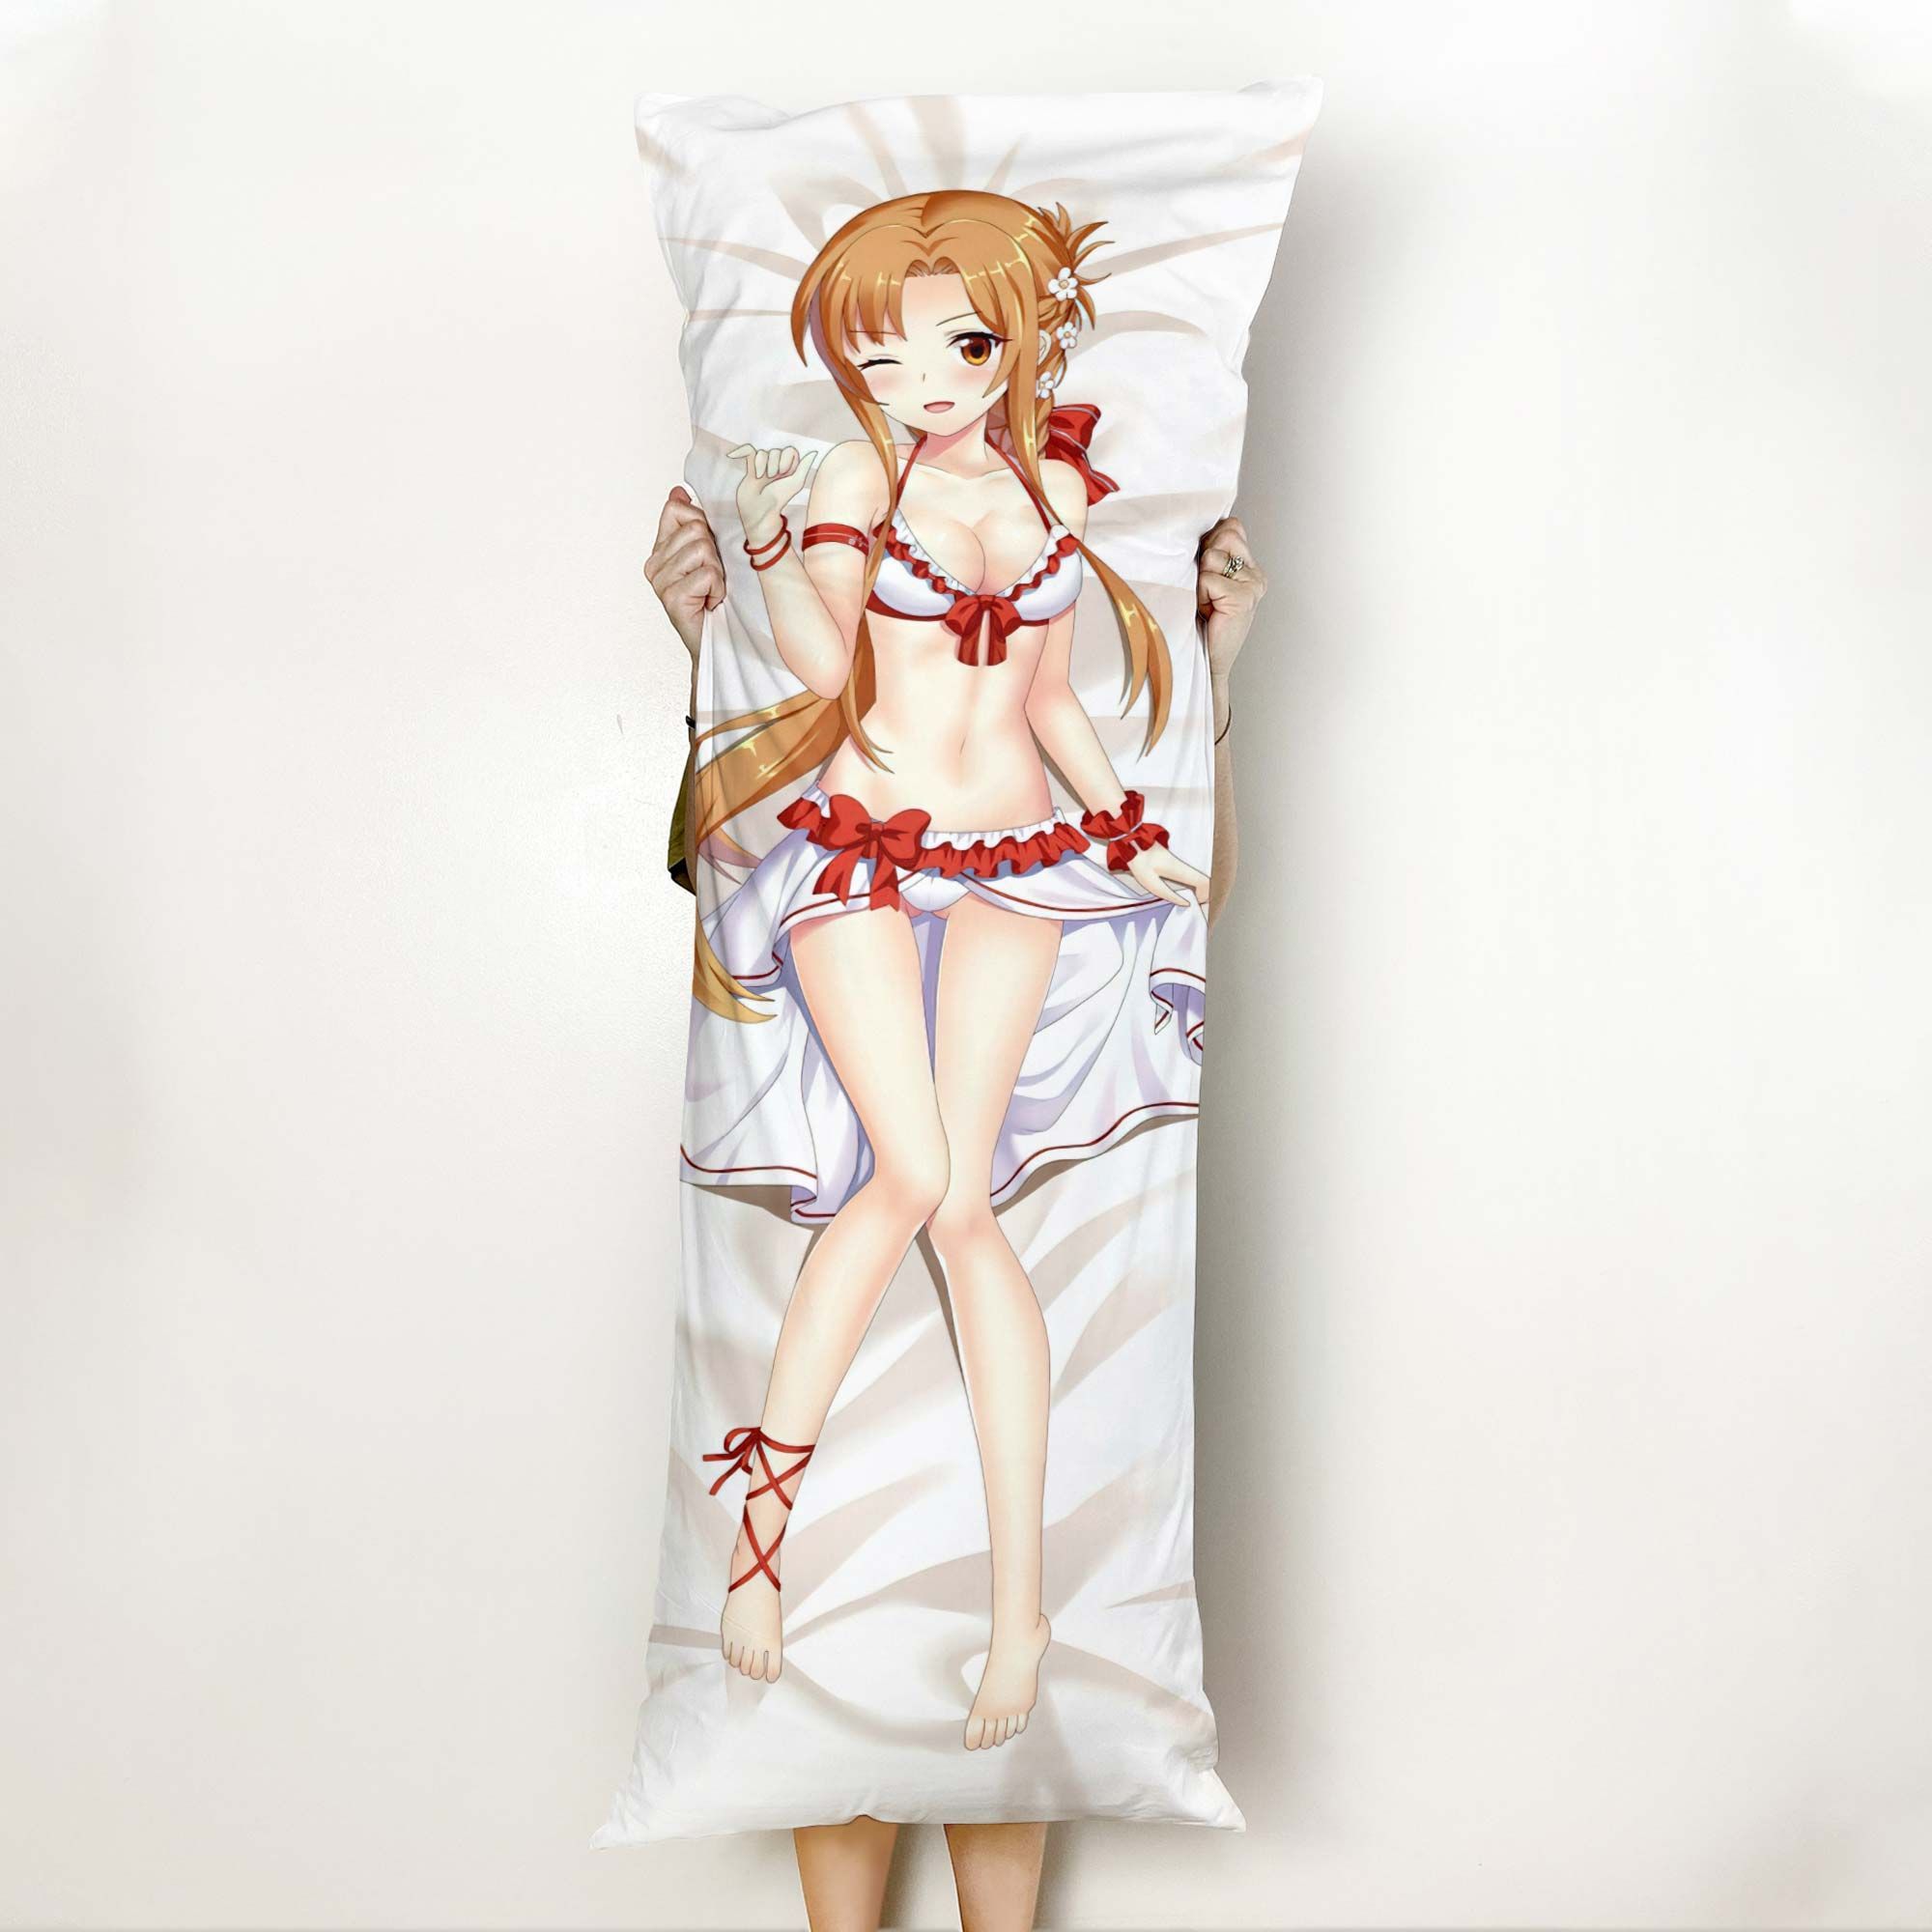 SAO Asuna Body Pillow Cover Anime Gifts Idea For Otaku Girl Official Merch GO0110